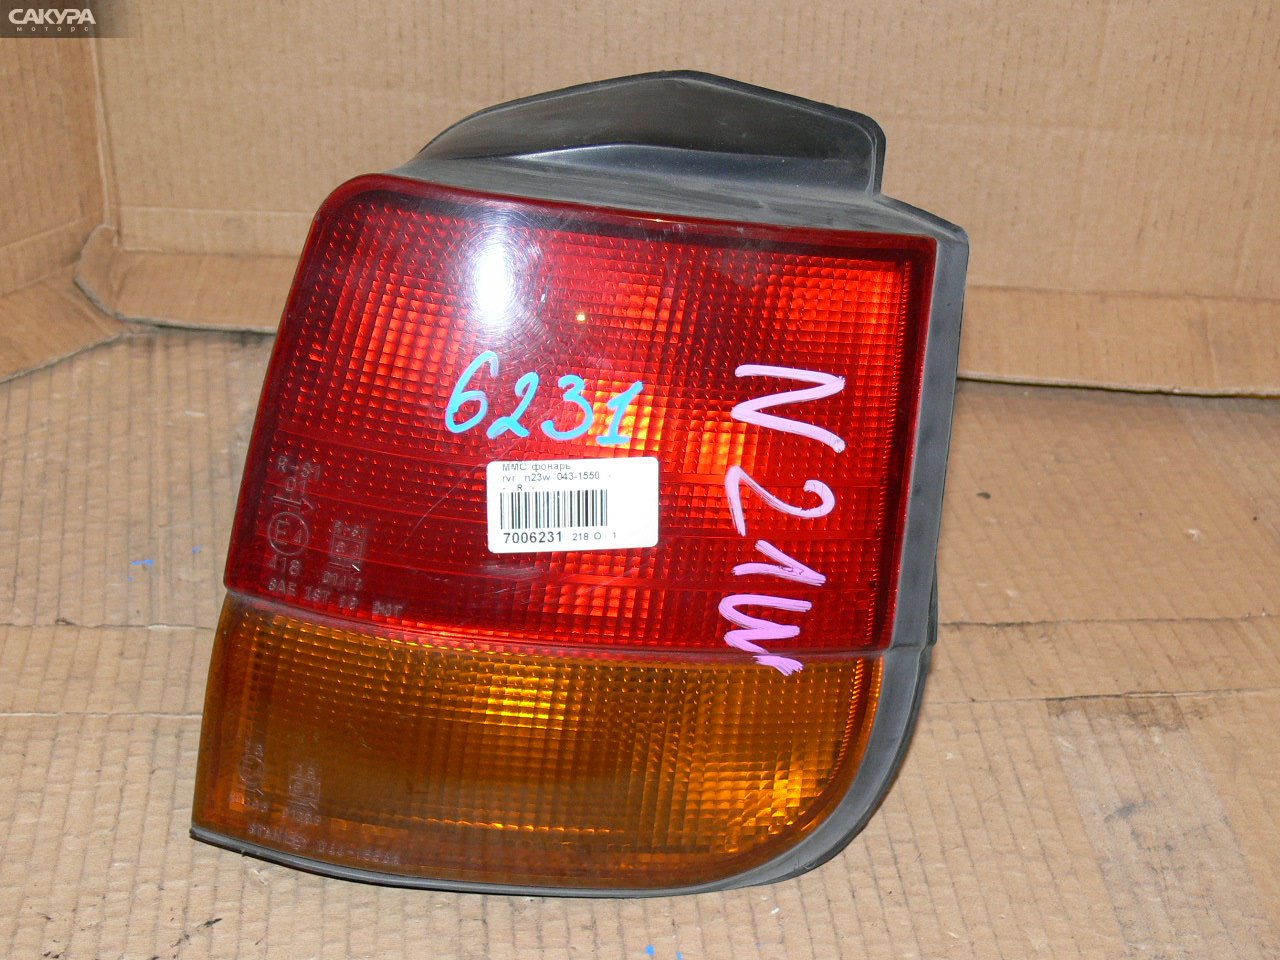 Фонарь стоп-сигнала правый Mitsubishi RVR N23W 043-1550: купить в Сакура Иркутск.